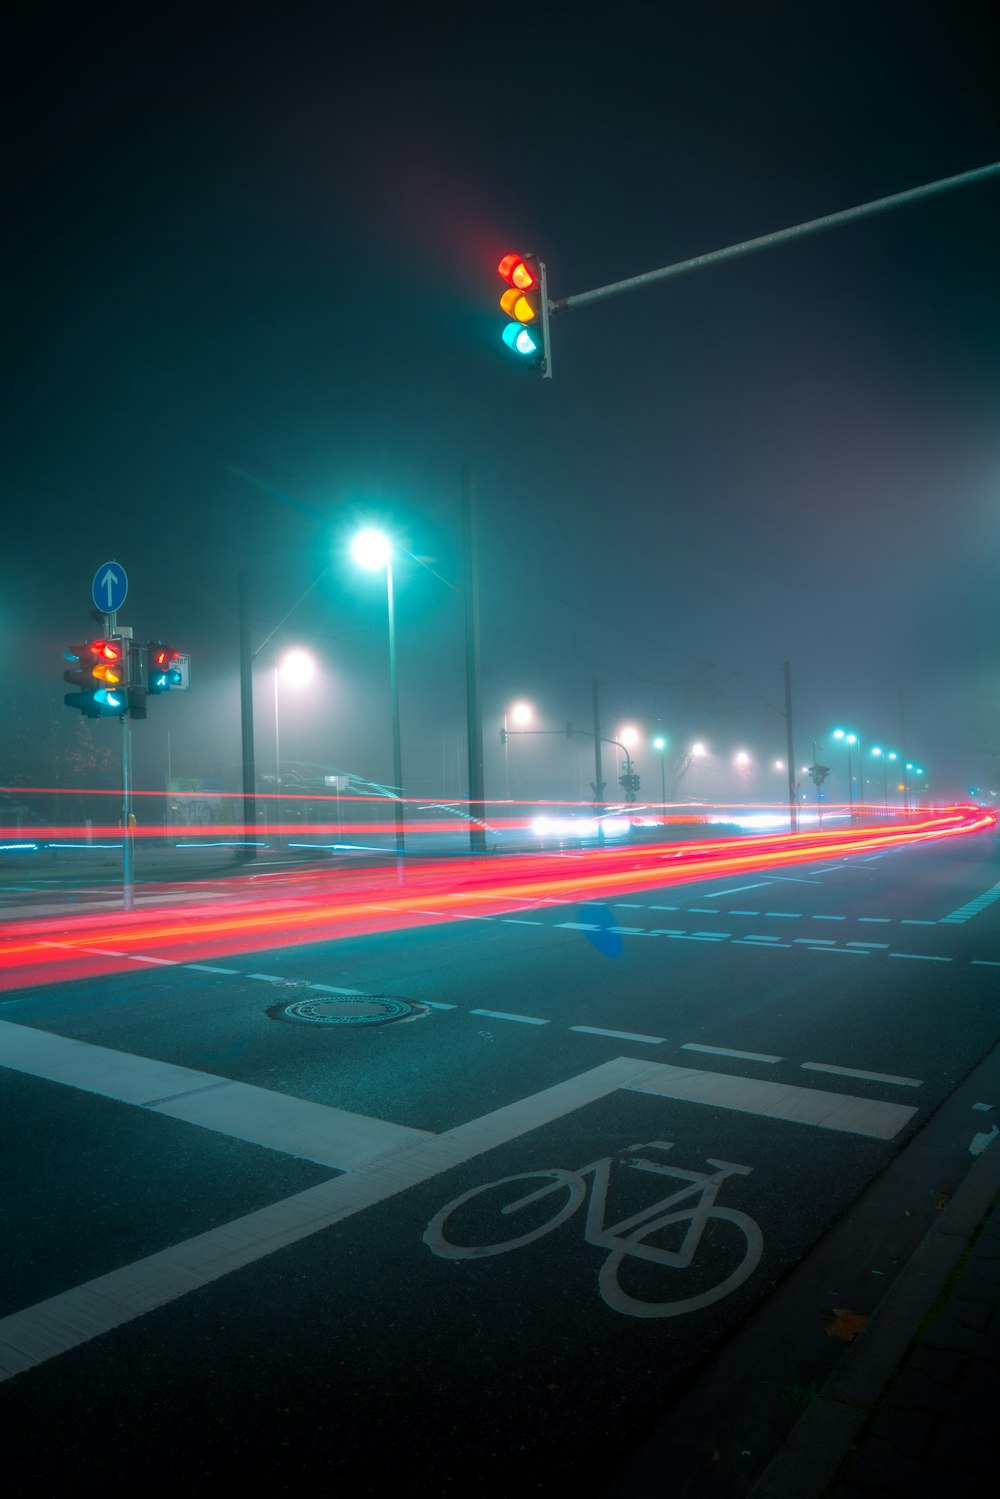 Cùng hòa mình vào không khí đầy thú vị và lãng mạn khi đạp xe trên con đường đêm đầy ánh đèn lung linh. Hãy khám phá cảm giác thú vị của việc thưởng thức đường xe đạp đêm ngay bây giờ và chia sẻ cho bạn bè bằng hình ảnh này! 